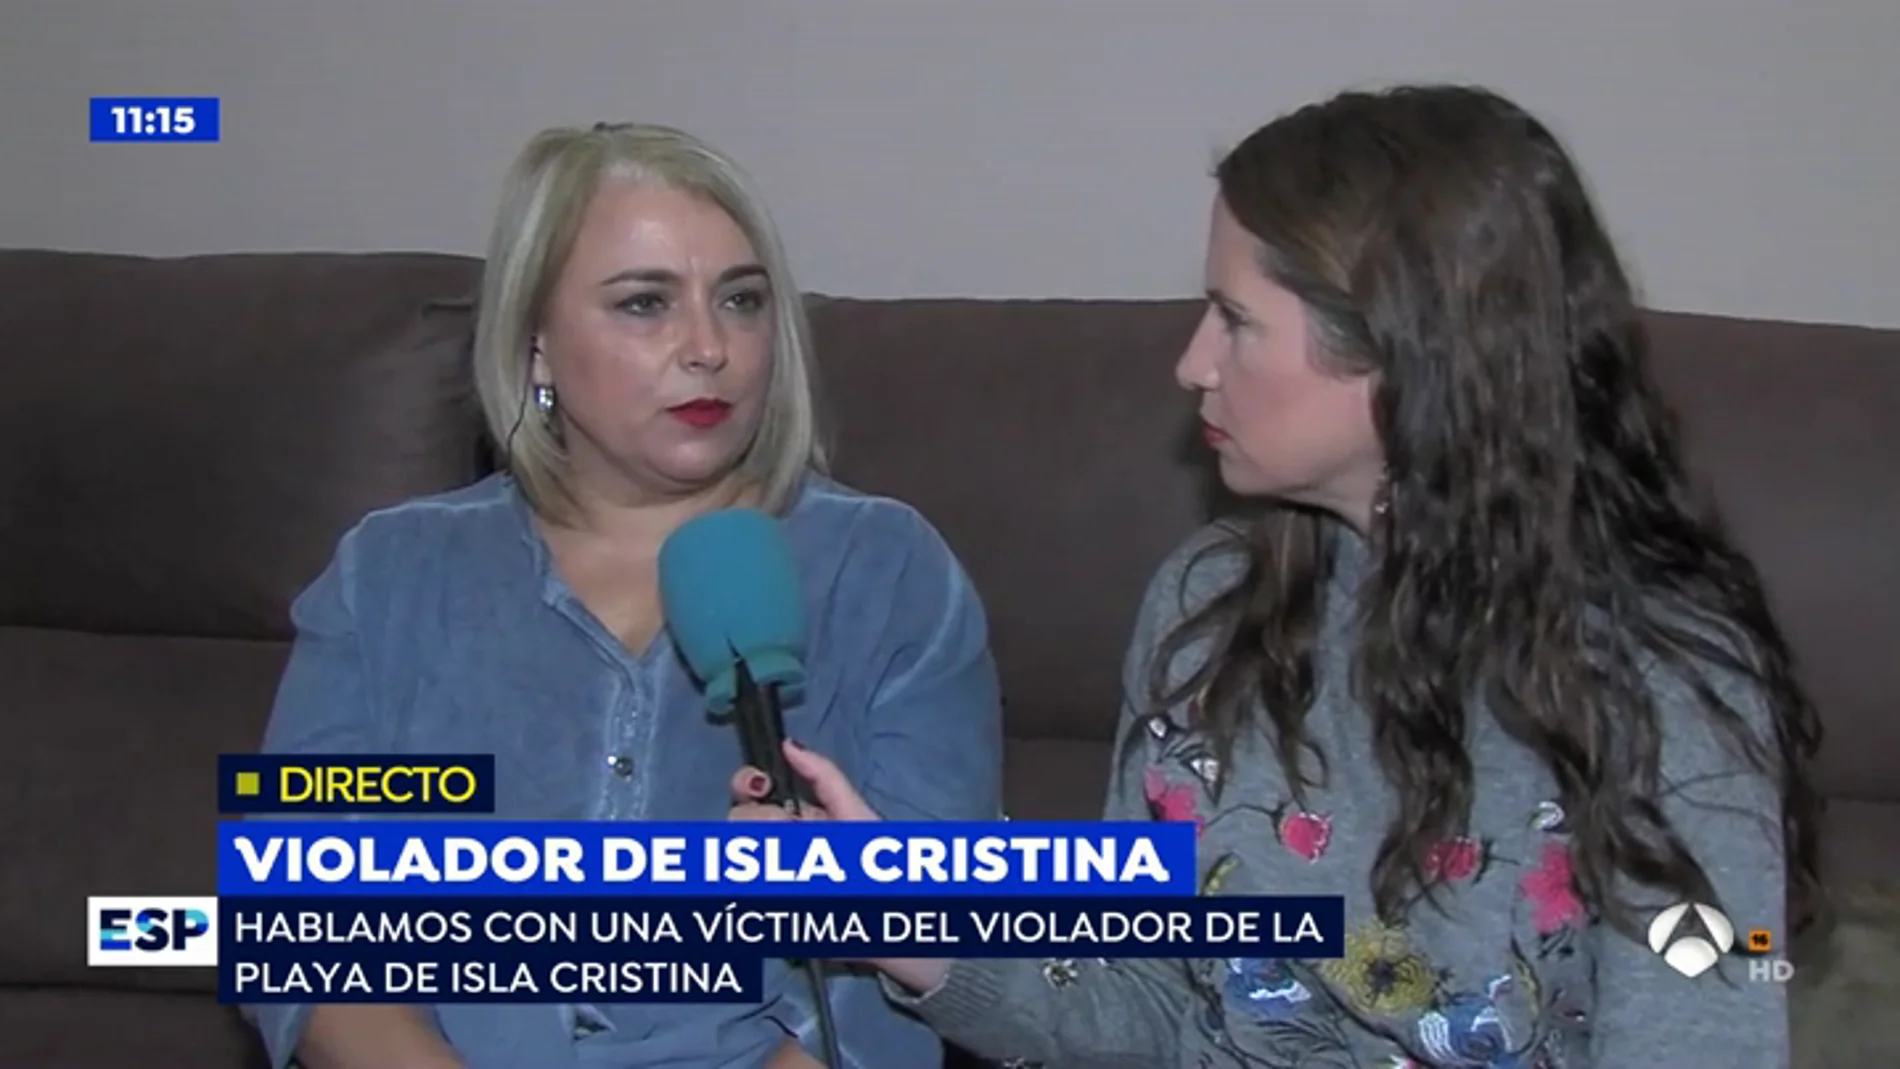 La terrible agresión sexual a una mujer en Isla Cristina: "Le arranqué un trozo de lengua cuando intentó besarme con su sucia lengua"